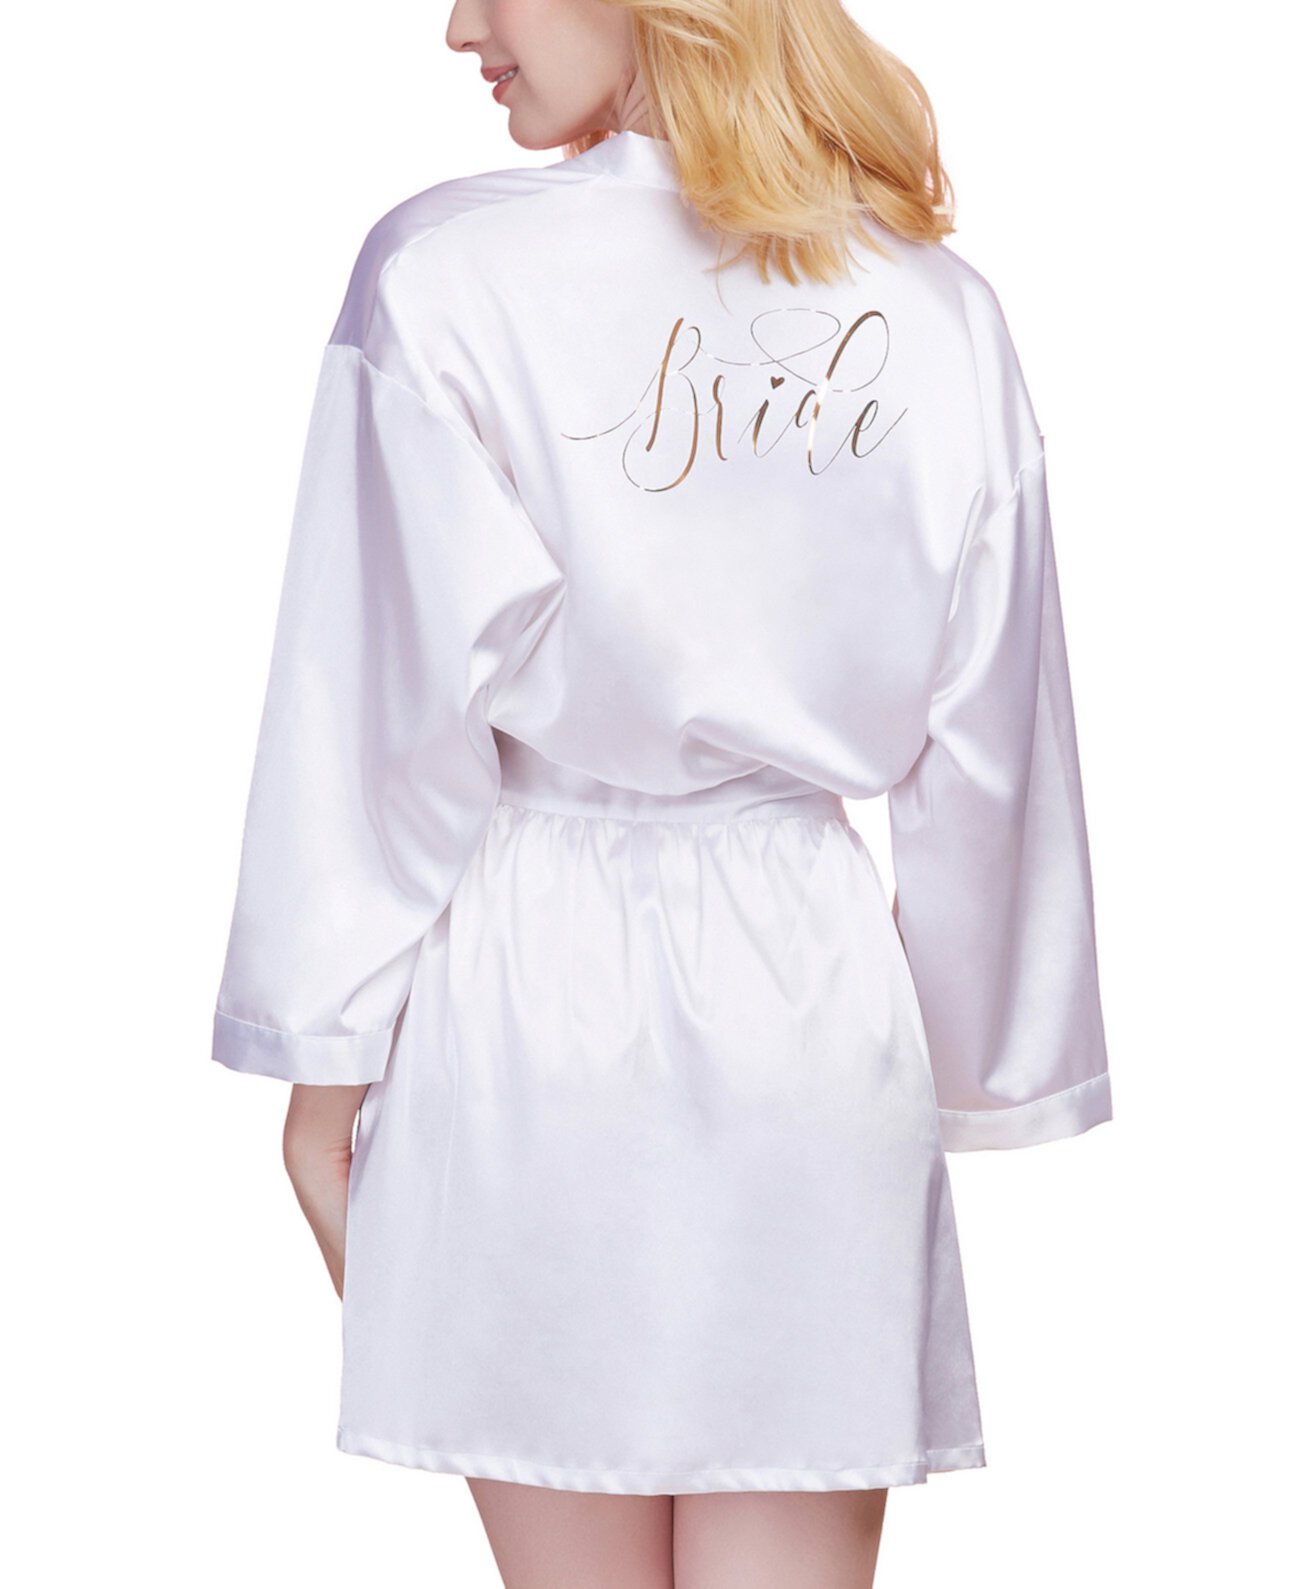 Женский атласный халат невесты из шармеза с регулируемой завязкой спереди Dreamgirl